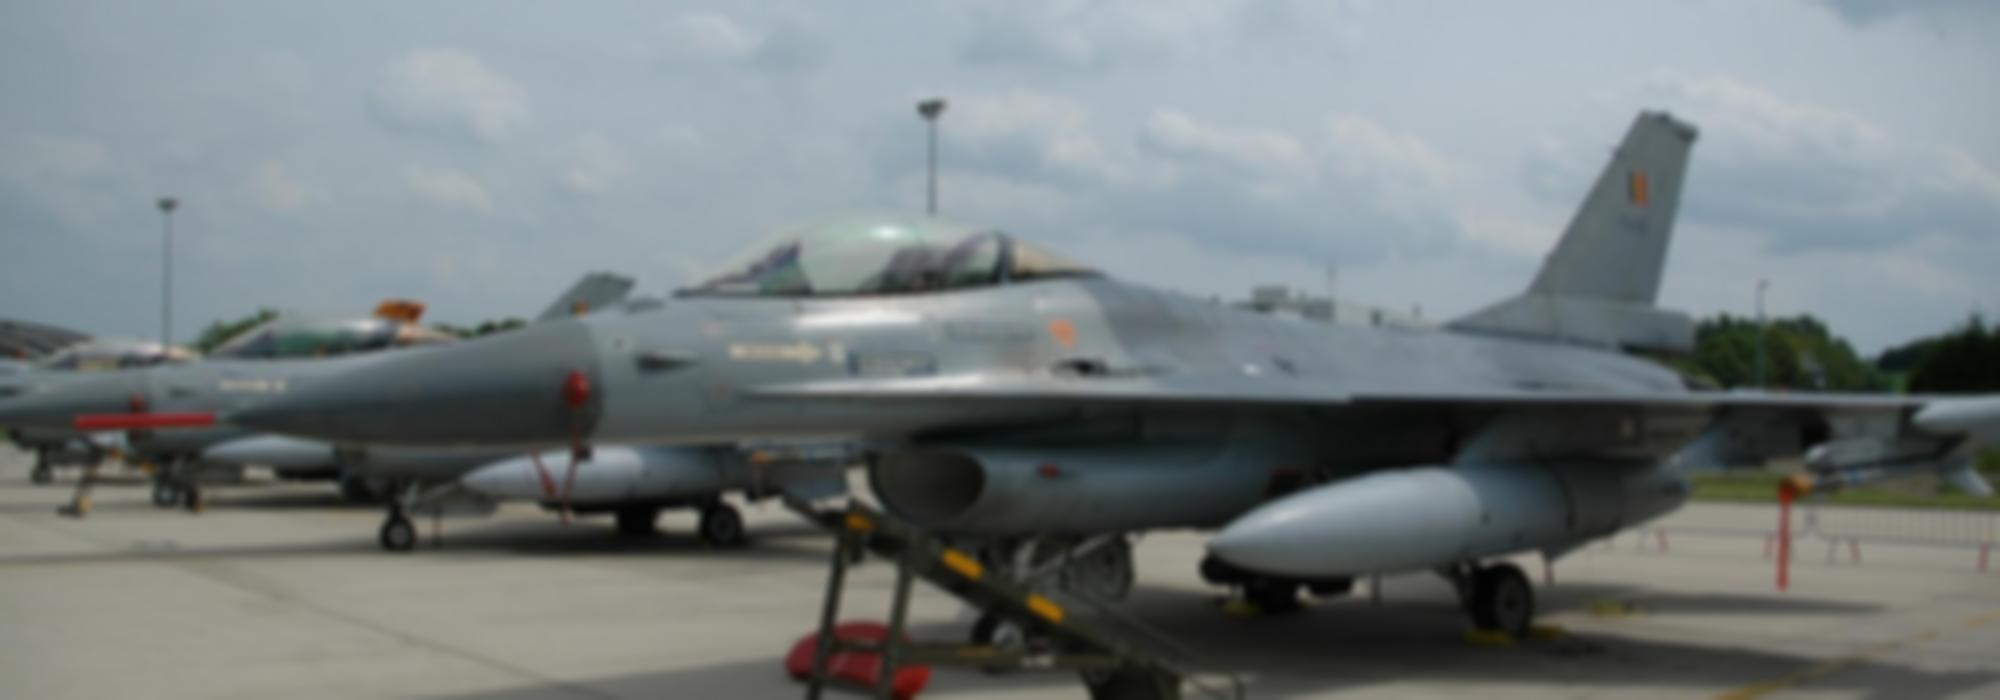 F-16 aan de grond